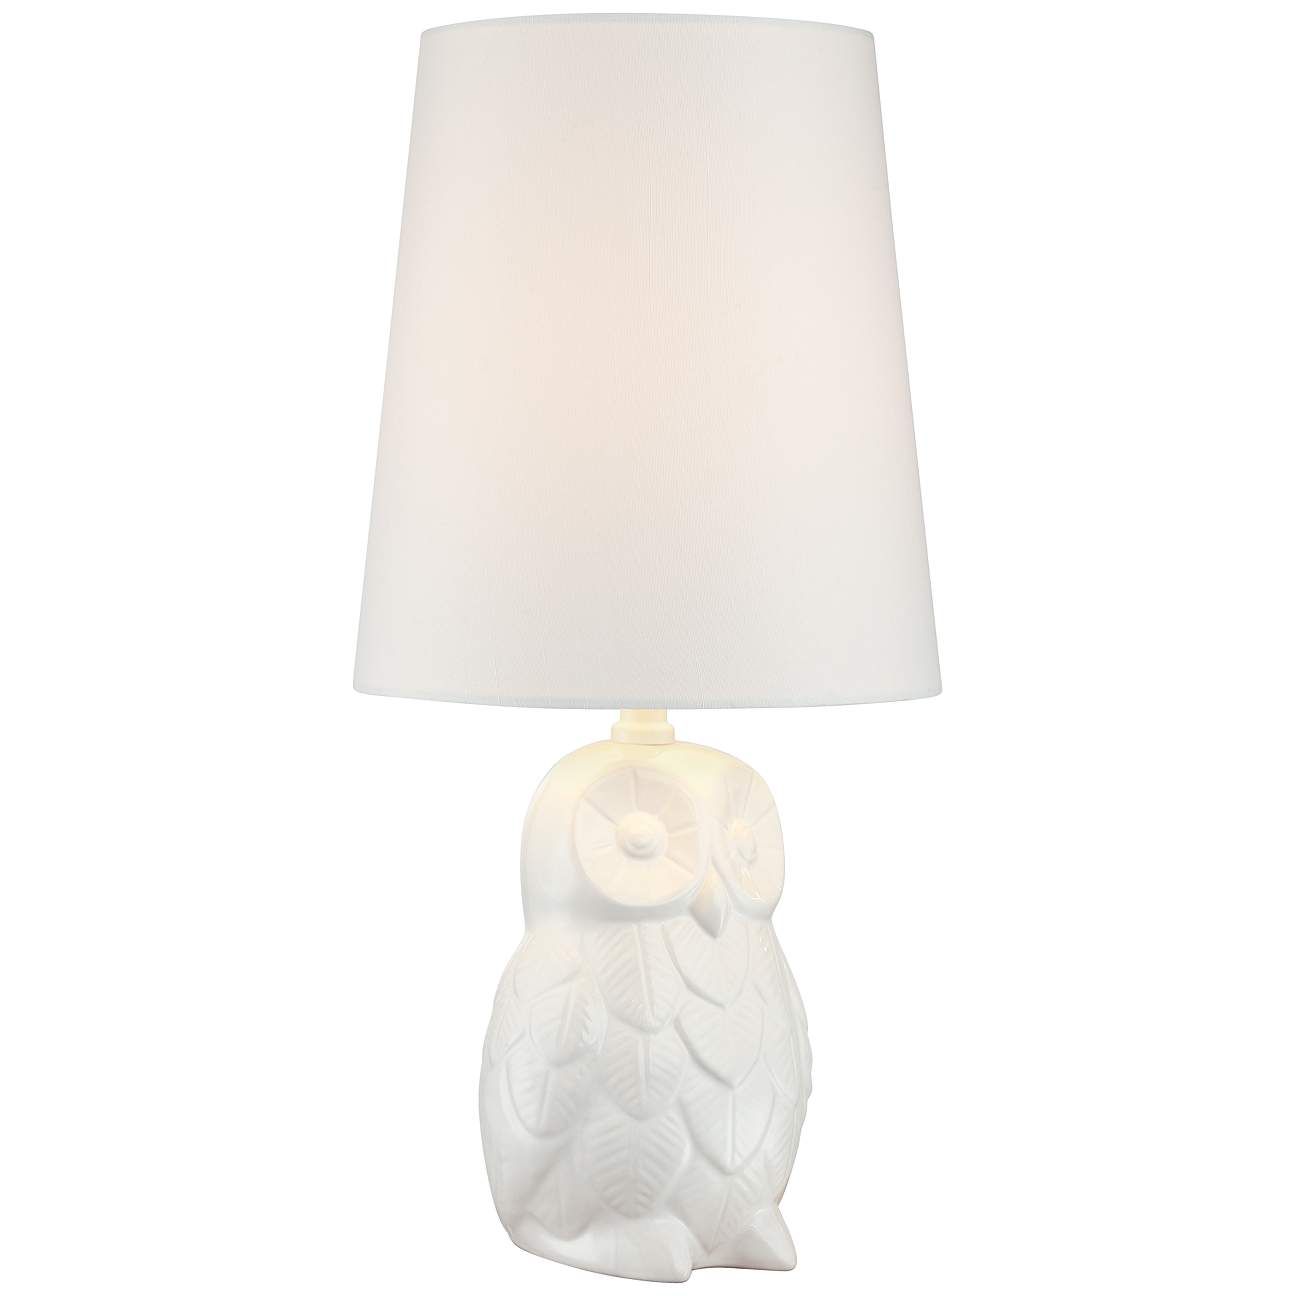 Night Owl 19" High White Ceramic Accent Table Lamp | LampsPlus.com